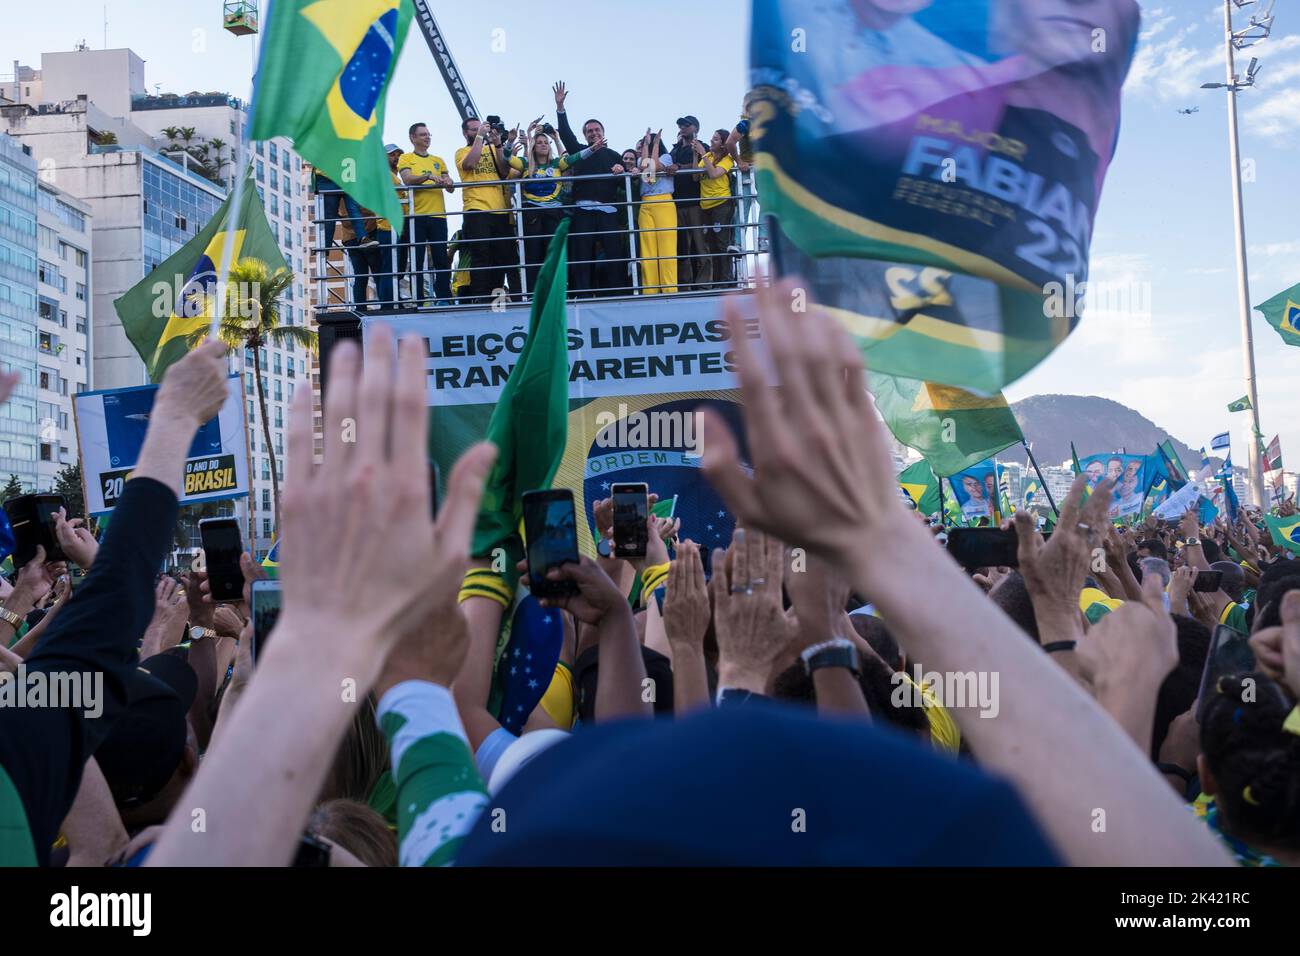 Le président brésilien et candidat à la réélection Jair Bolsonaro s'adresse à ses partisans lors d'un rassemblement politique sur la plage de Copacabana à la date de la célébration des 200 ans d'indépendance du Brésil. Banque D'Images